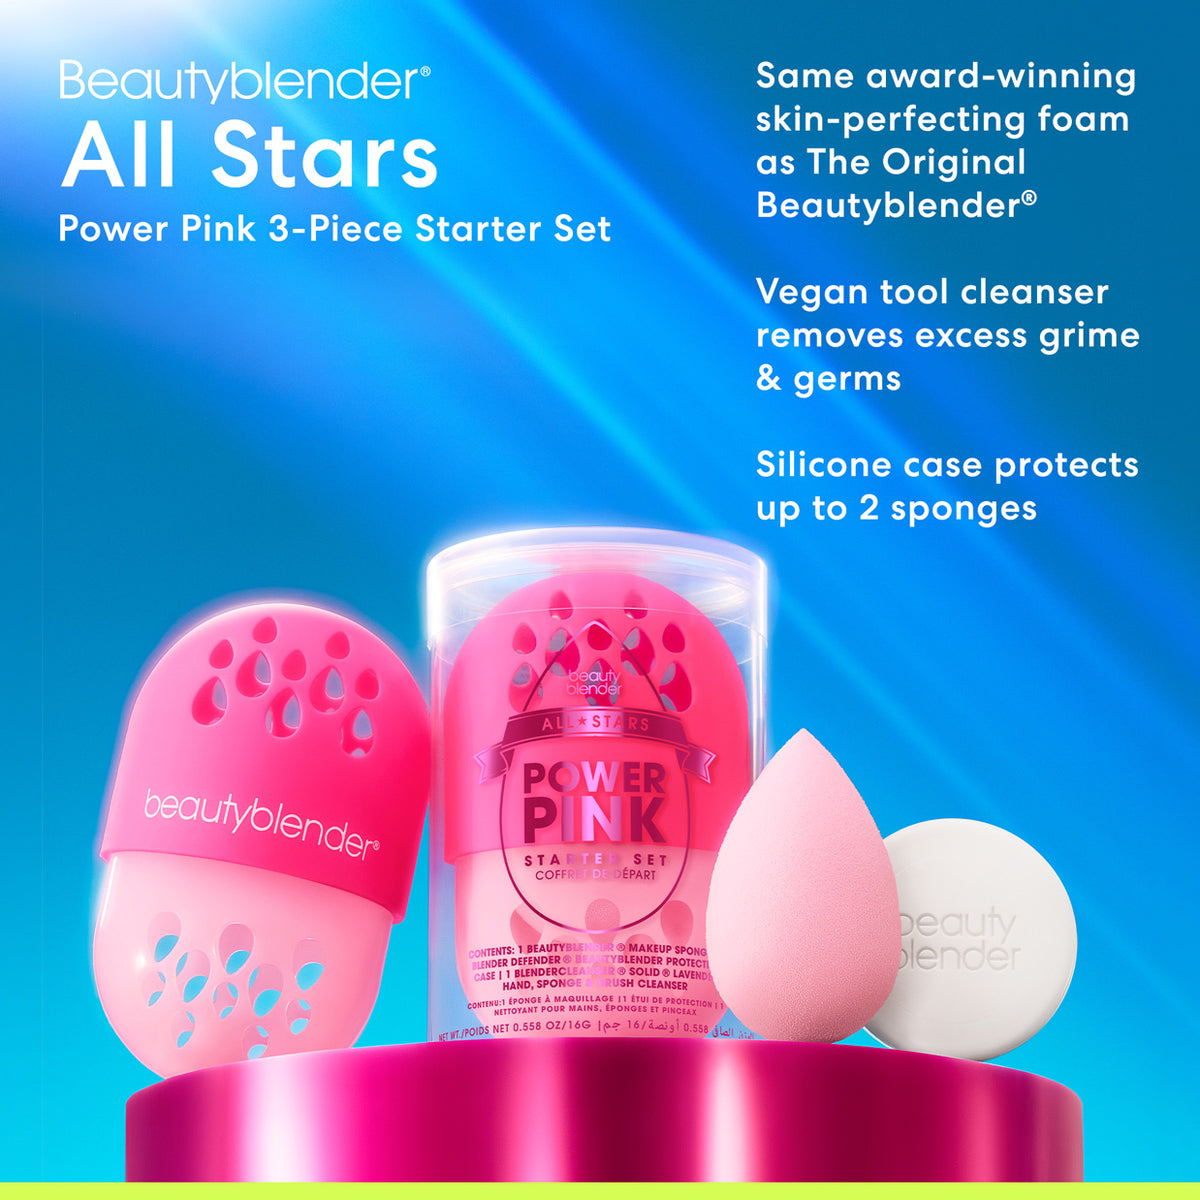 All-Stars Power Pink 3-Piece Starter Set.